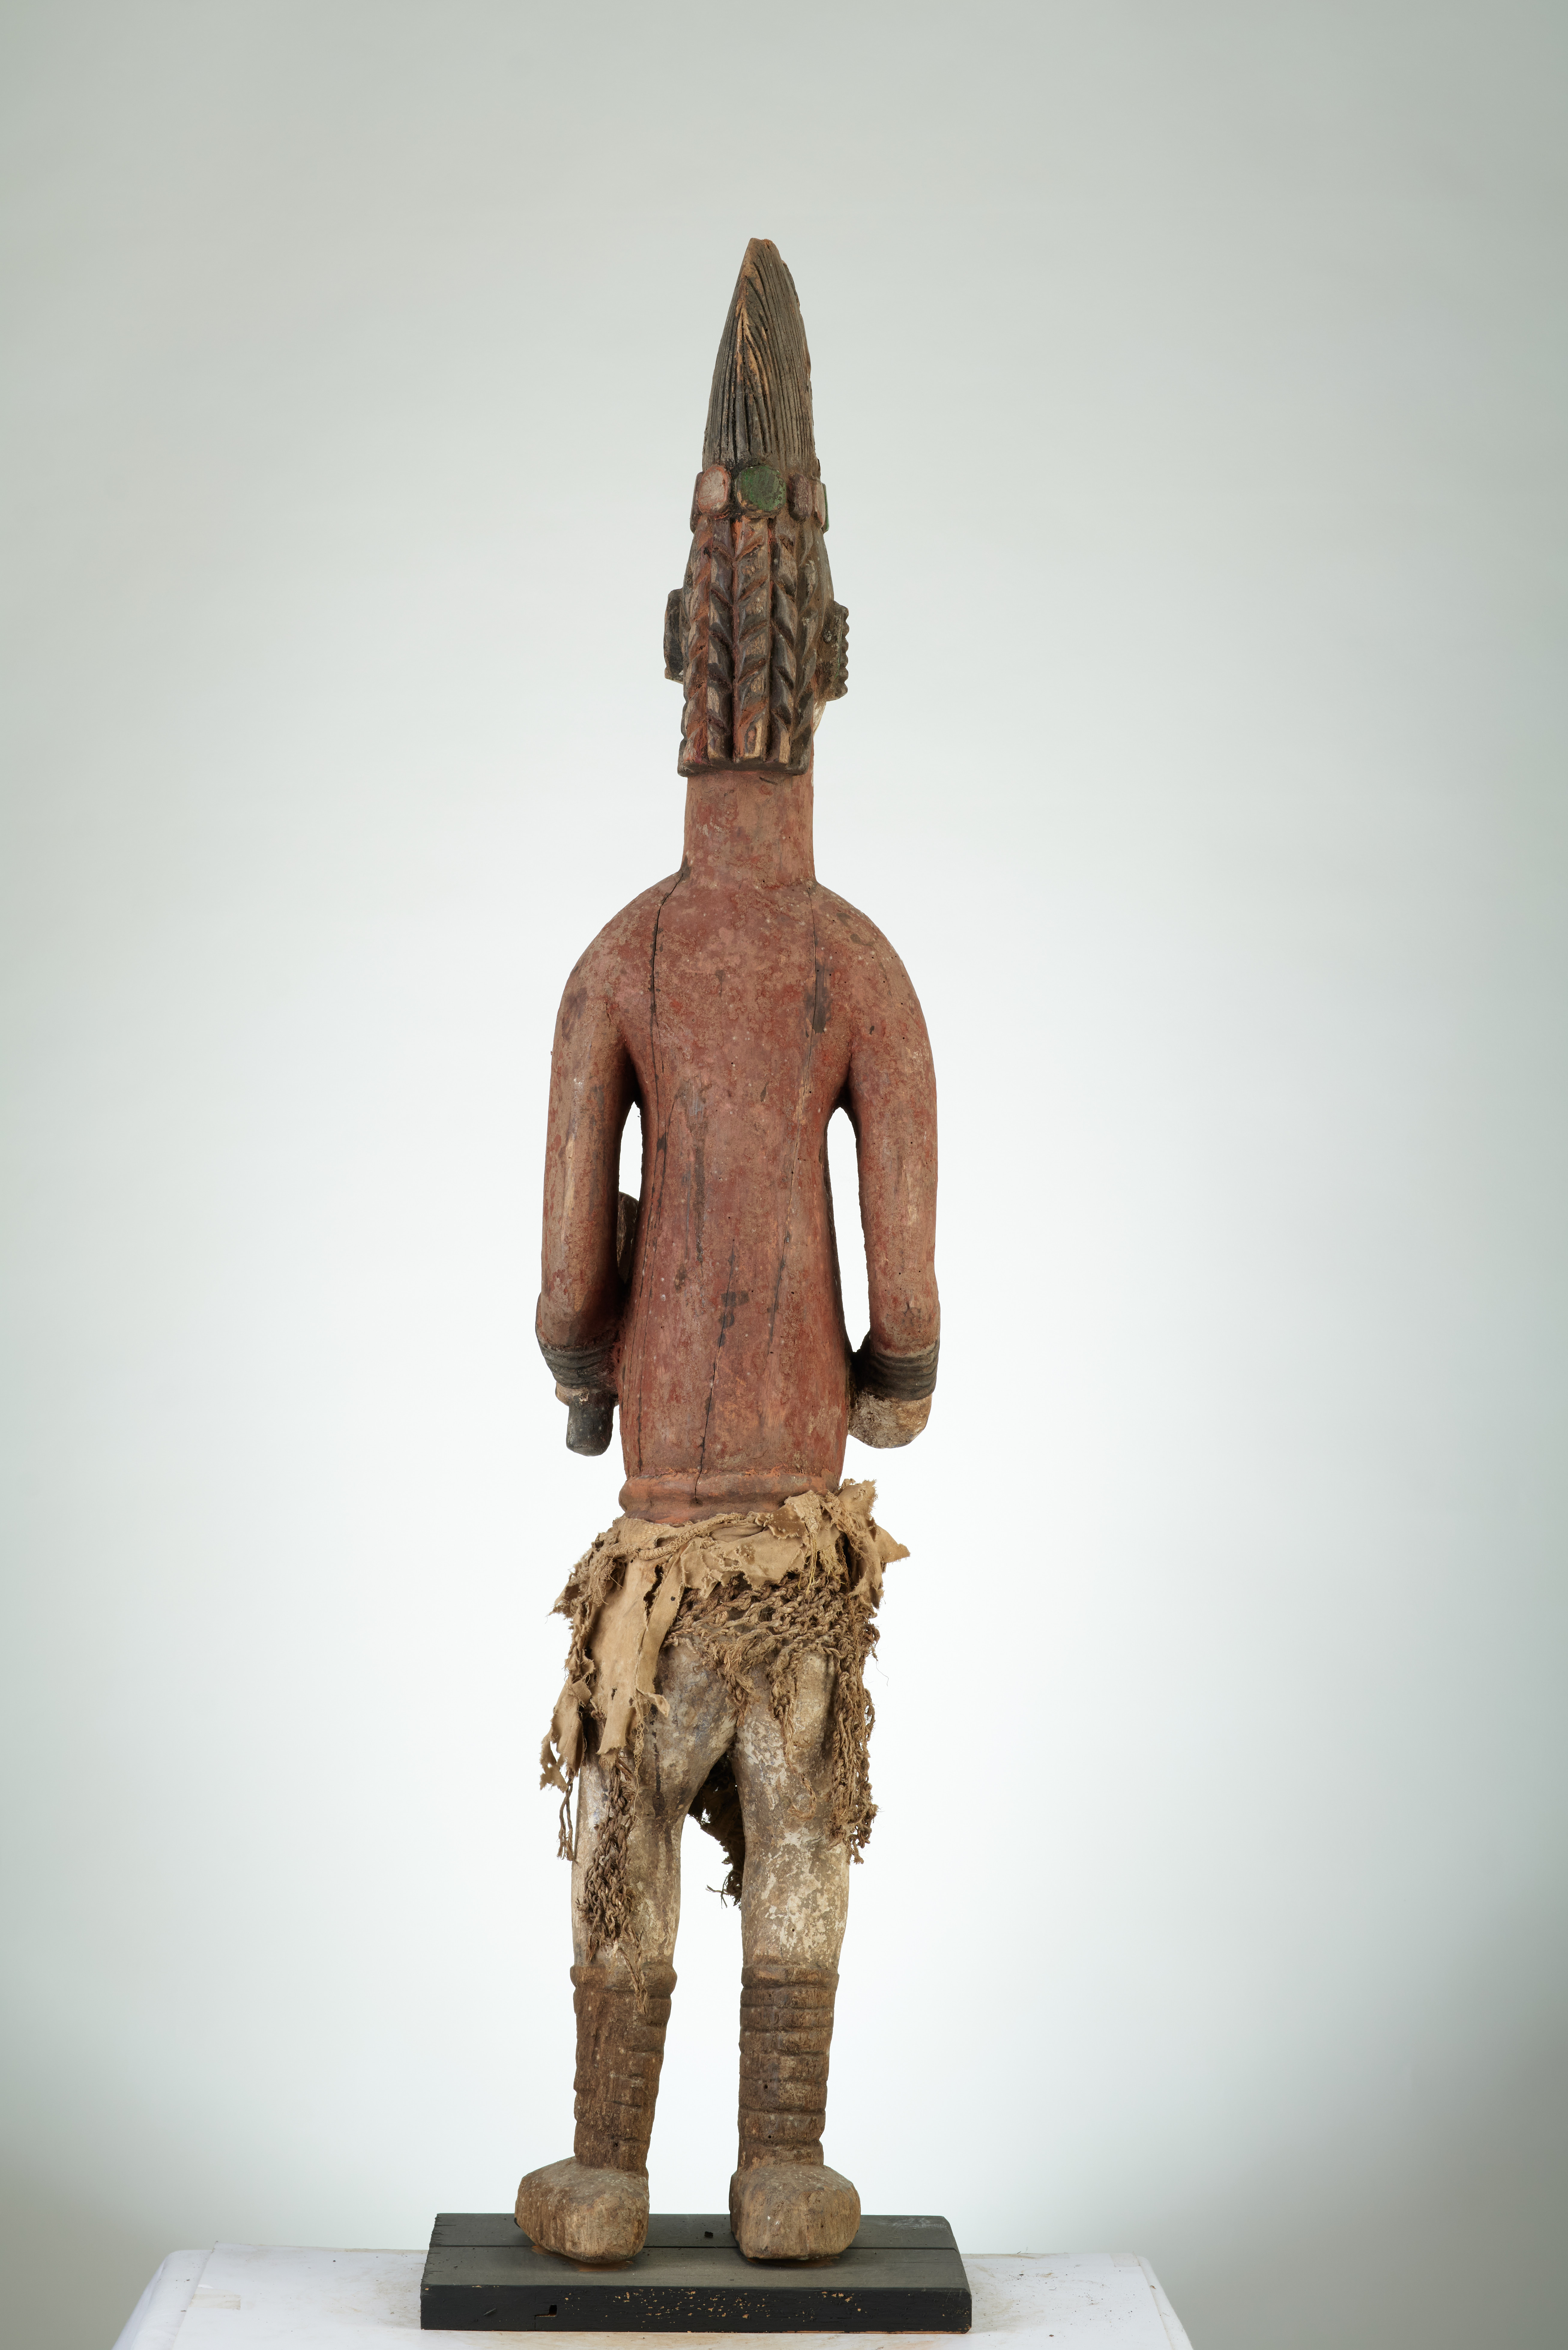 igbo (statue ), d`afrique : Nigéria, statuette igbo (statue ), masque ancien africain igbo (statue ), art du Nigéria - Art Africain, collection privées Belgique. Statue africaine de la tribu des igbo (statue ), provenant du Nigéria, 485/534.Un couple de statues Igbo homme et femme, debout,H.108cm et 101cm.;incarnant les nombreux Dieux des Igbo,reliés aux ancêtres,et qui sont regroupées par famille symboliques dans des cases spéciales où elles sont révérées. Elles sont sorties durant les festivités annuelles et portées en parade à travers le village.Appellées ALUSI.Ces statues étaient sculptées par les hommes et régulièrement repeintes par les femmes.Içi la statue porte une coiffe élaborée (en mitre)avec une glace miroir de chaque côté,des cheveux en tresses.Le visage blanc et noir.La statue est peinte en rouge et porte des scarifications, descendant de la gorge sur le ventre,les mains et les jambes sont également blancs.Elles portent des bracelets autour des bras et des jambes et une ceinture autour des hanches.Début du 20eme sc.;bois léger, peint en rouge,blanc, noir bleu et jaune,tissu en fibres tressées
(Col.pères blanc Soleau à Paris.)

IGBO ALUSI beeld 19de eeuw -begin 20ste eeuw( col witte paters Parijs) zie ook n° 224 en 230. art,culture,masque,statue,statuette,pot,ivoire,exposition,expo,masque original,masques,statues,statuettes,pots,expositions,expo,masques originaux,collectionneur d`art,art africain,culture africaine,masque africain,statue africaine,statuette africaine,pot africain,ivoire africain,exposition africain,expo africain,masque origina africainl,masques africains,statues africaines,statuettes africaines,pots africains,expositions africaines,expo africaines,masques originaux  africains,collectionneur d`art africain